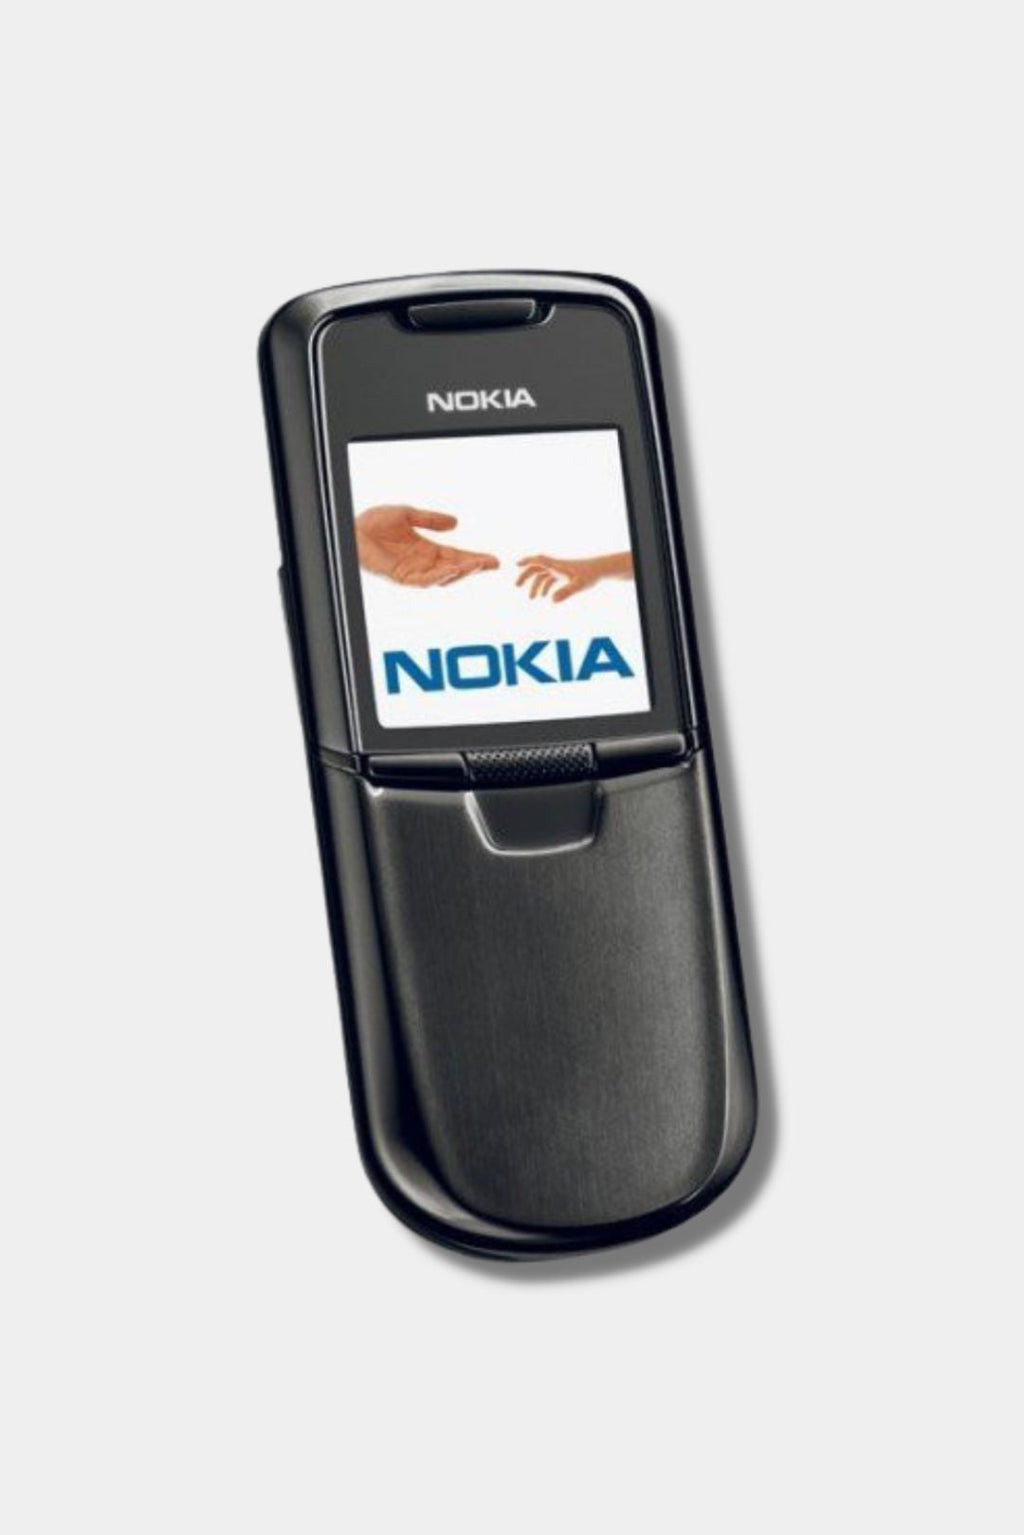 Купить нокиа слайдер. Nokia 8800. Телефон нокиа 8800. Nokia 8800 Classic Black. Модели Nokia слайдер 8800.